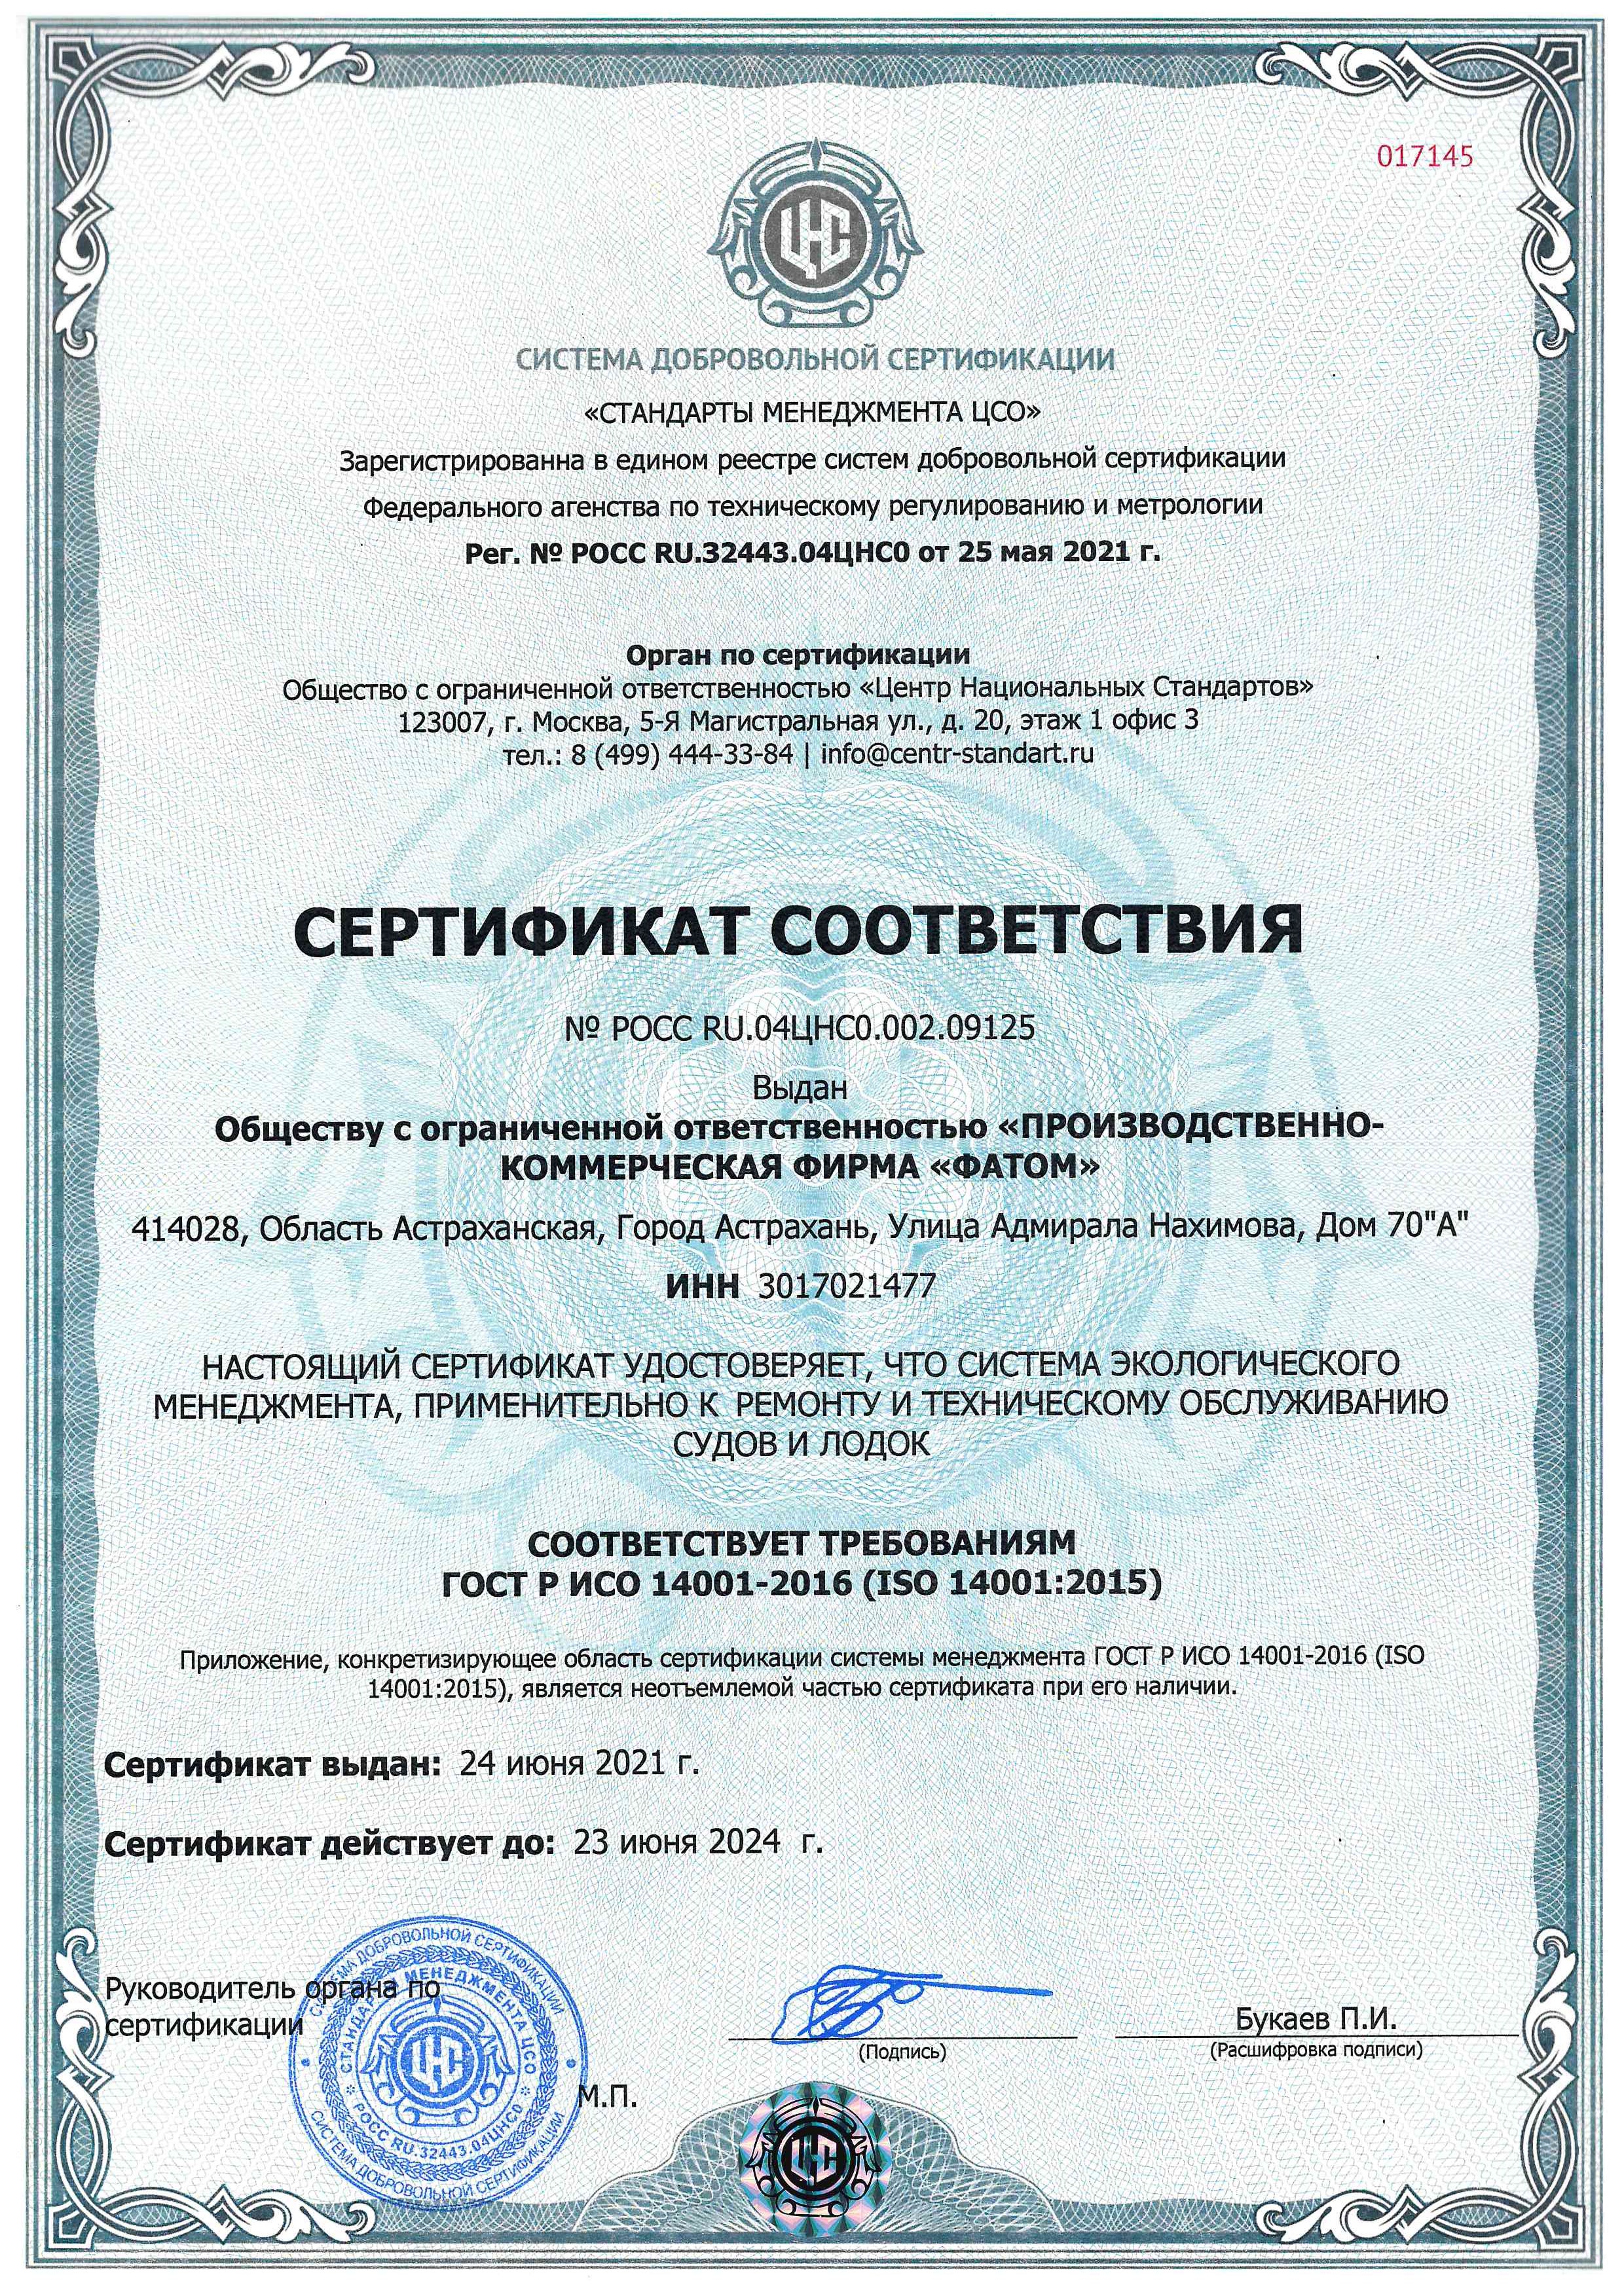 Сертификат соответствия 09125